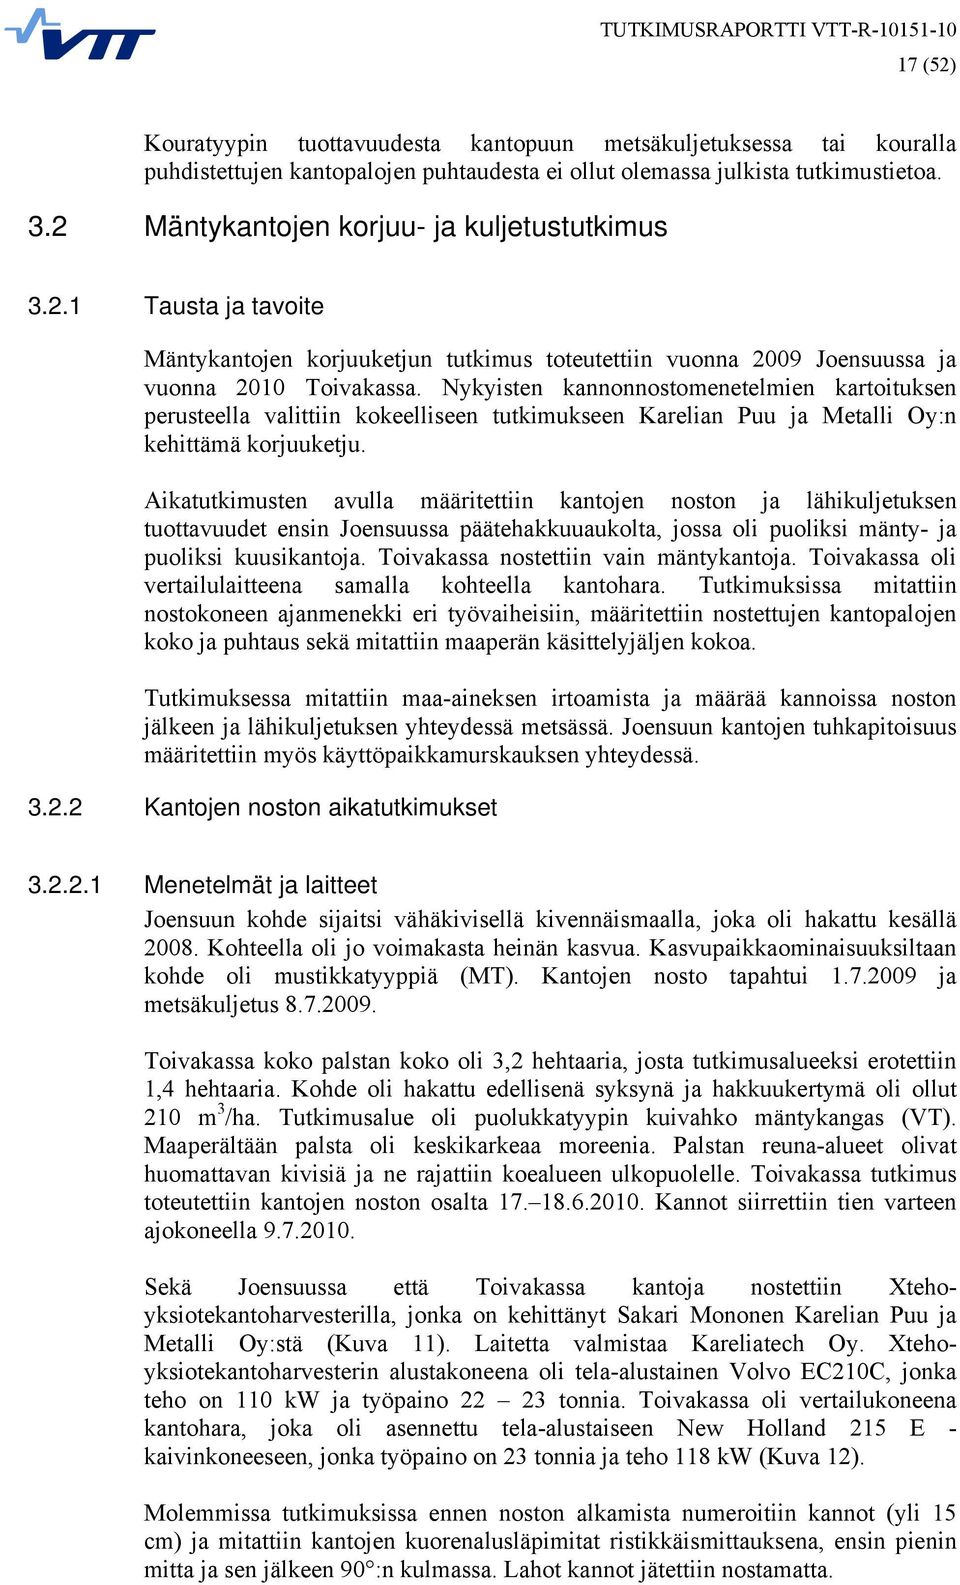 Nykyisten kannonnostomenetelmien kartoituksen perusteella valittiin kokeelliseen tutkimukseen Karelian Puu ja Metalli Oy:n kehittämä korjuuketju.